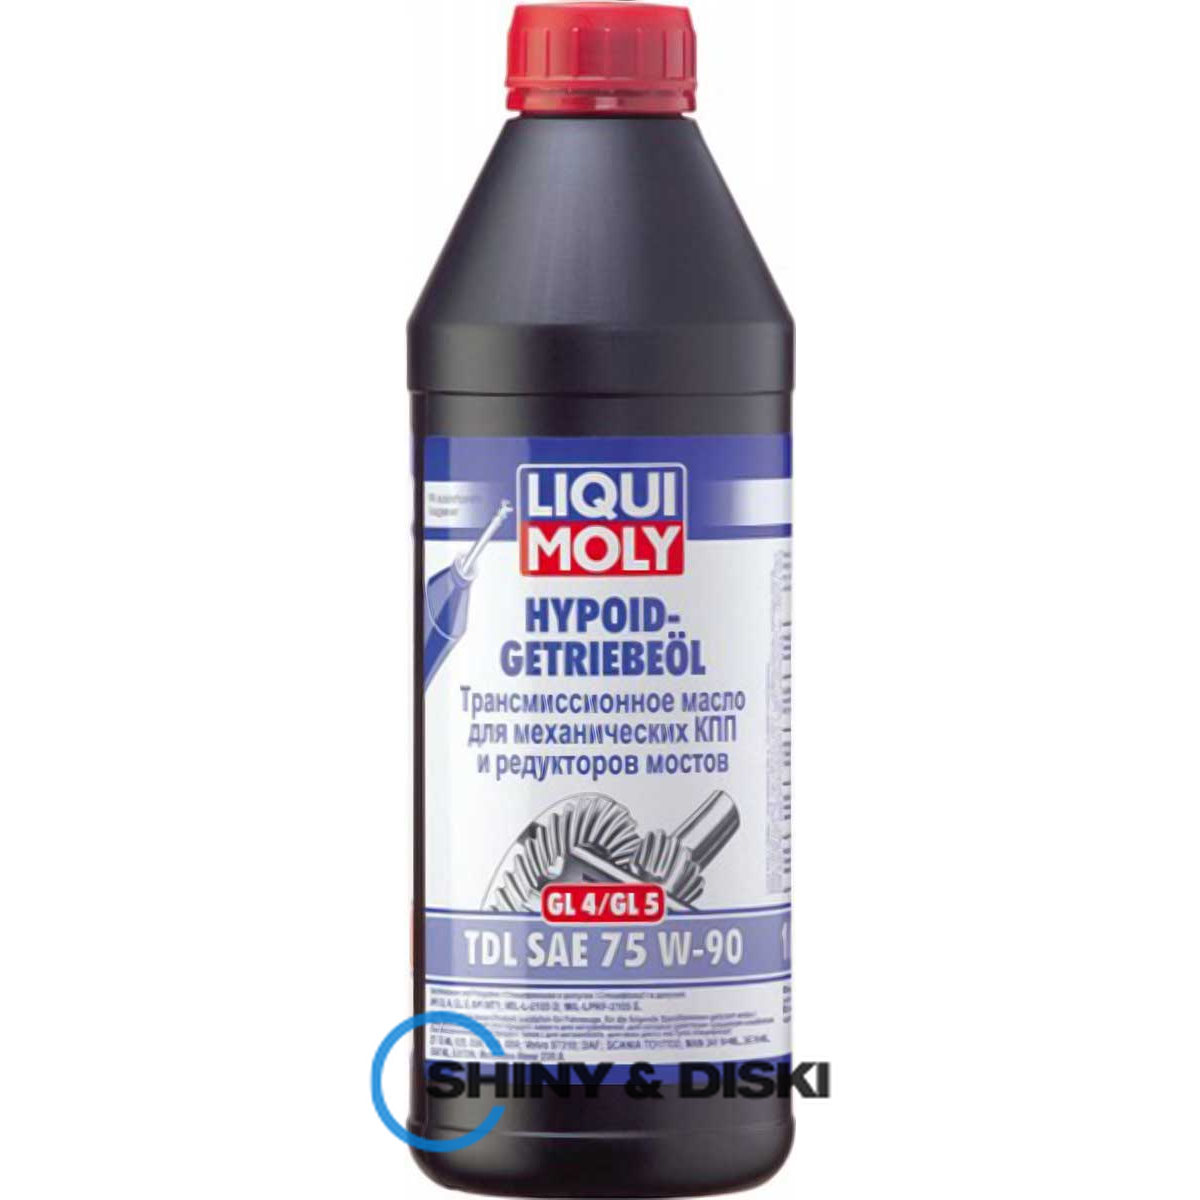 liqui moly hypoid-getriebeoil tdl gl-4/gl-5 75w-90 (1л)